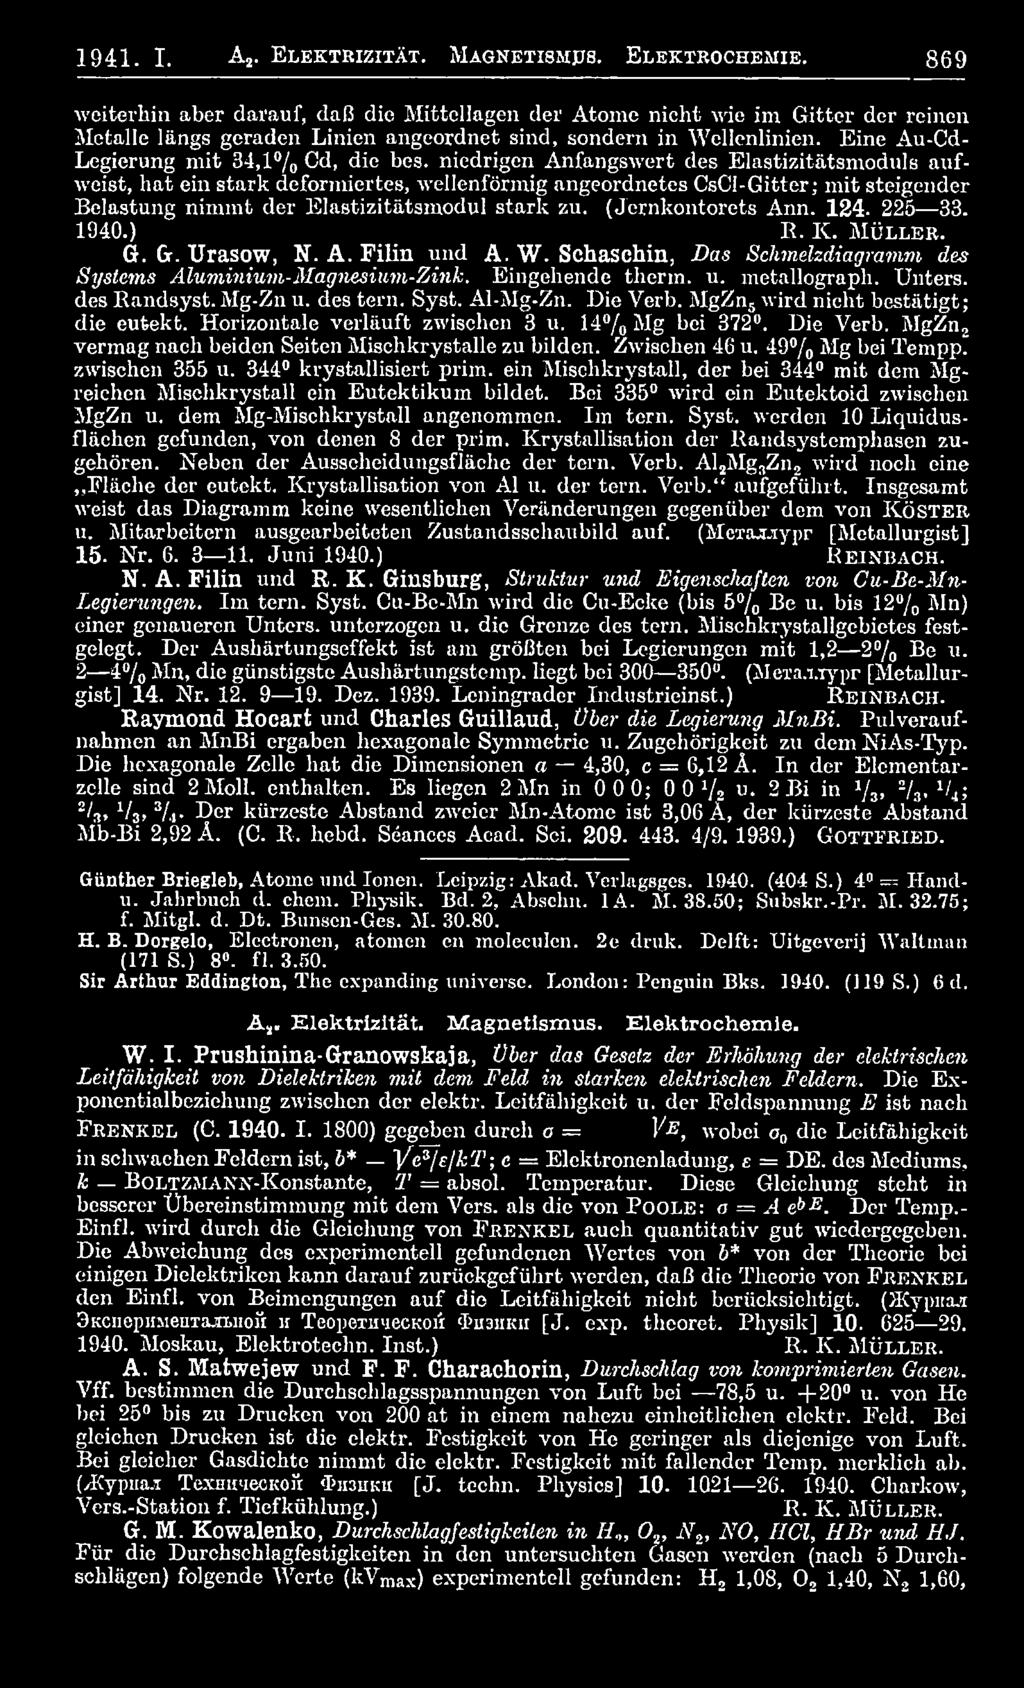 (Jernkontorets Ann. 124. 225 33. 1940.) R. K. M ü l l e r. G. Gr. Urasow, N. A. Filin und A. W. Schaschin, Das Schmelzdiagramm des Systems Aluminium-Magnesium-Zink. Eingehende therm. u. metallograph.